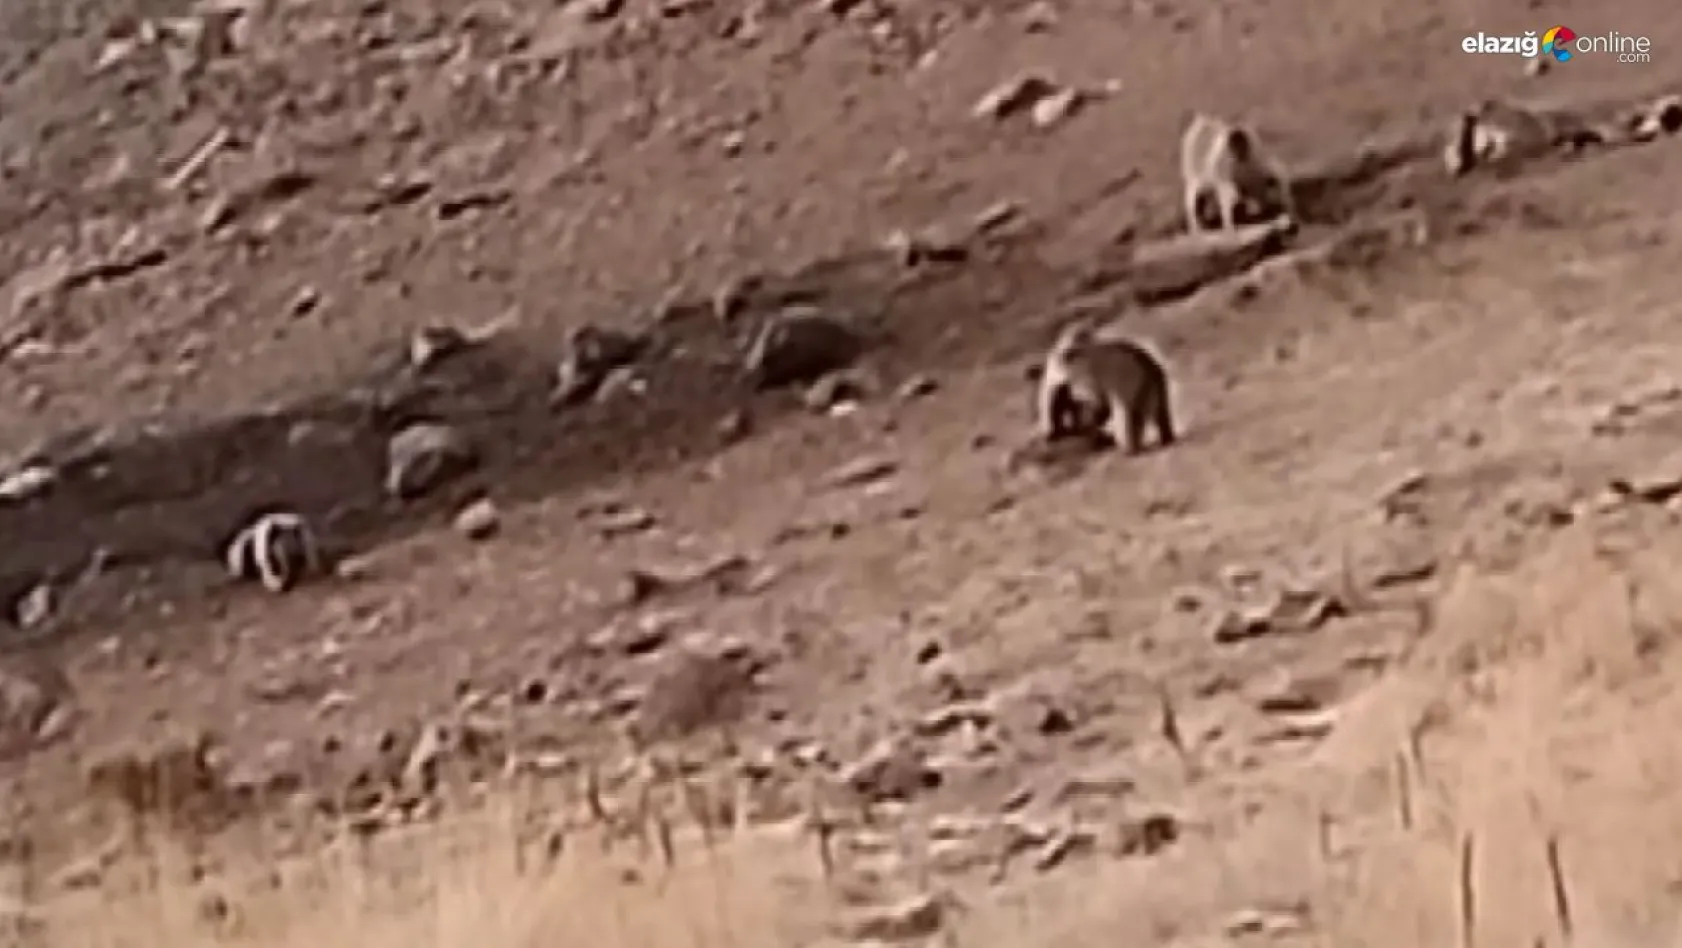 Tunceli'de sakatat için ziyaretgaha gelen 4 boz ayı görüntülendi